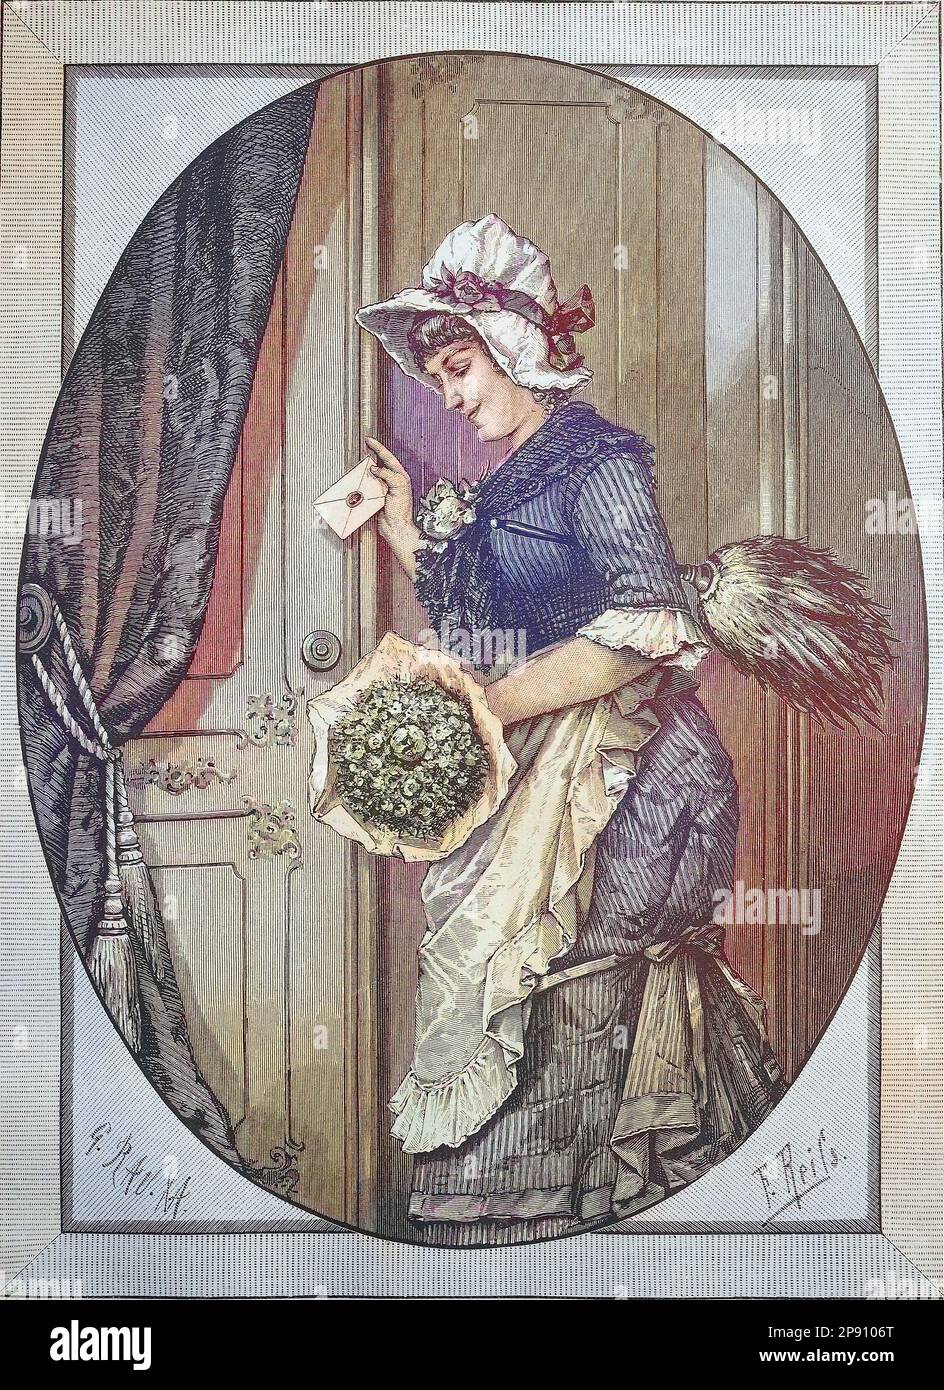 Neujahrswunsch, Kammerzofe mit Blumenstrauß und Neujahrsglückwünschen an der Tür, Historisch, digital restaurierte Reproduktion von einer Vorlage aus dem 19. Jahrhundert Stock Photo